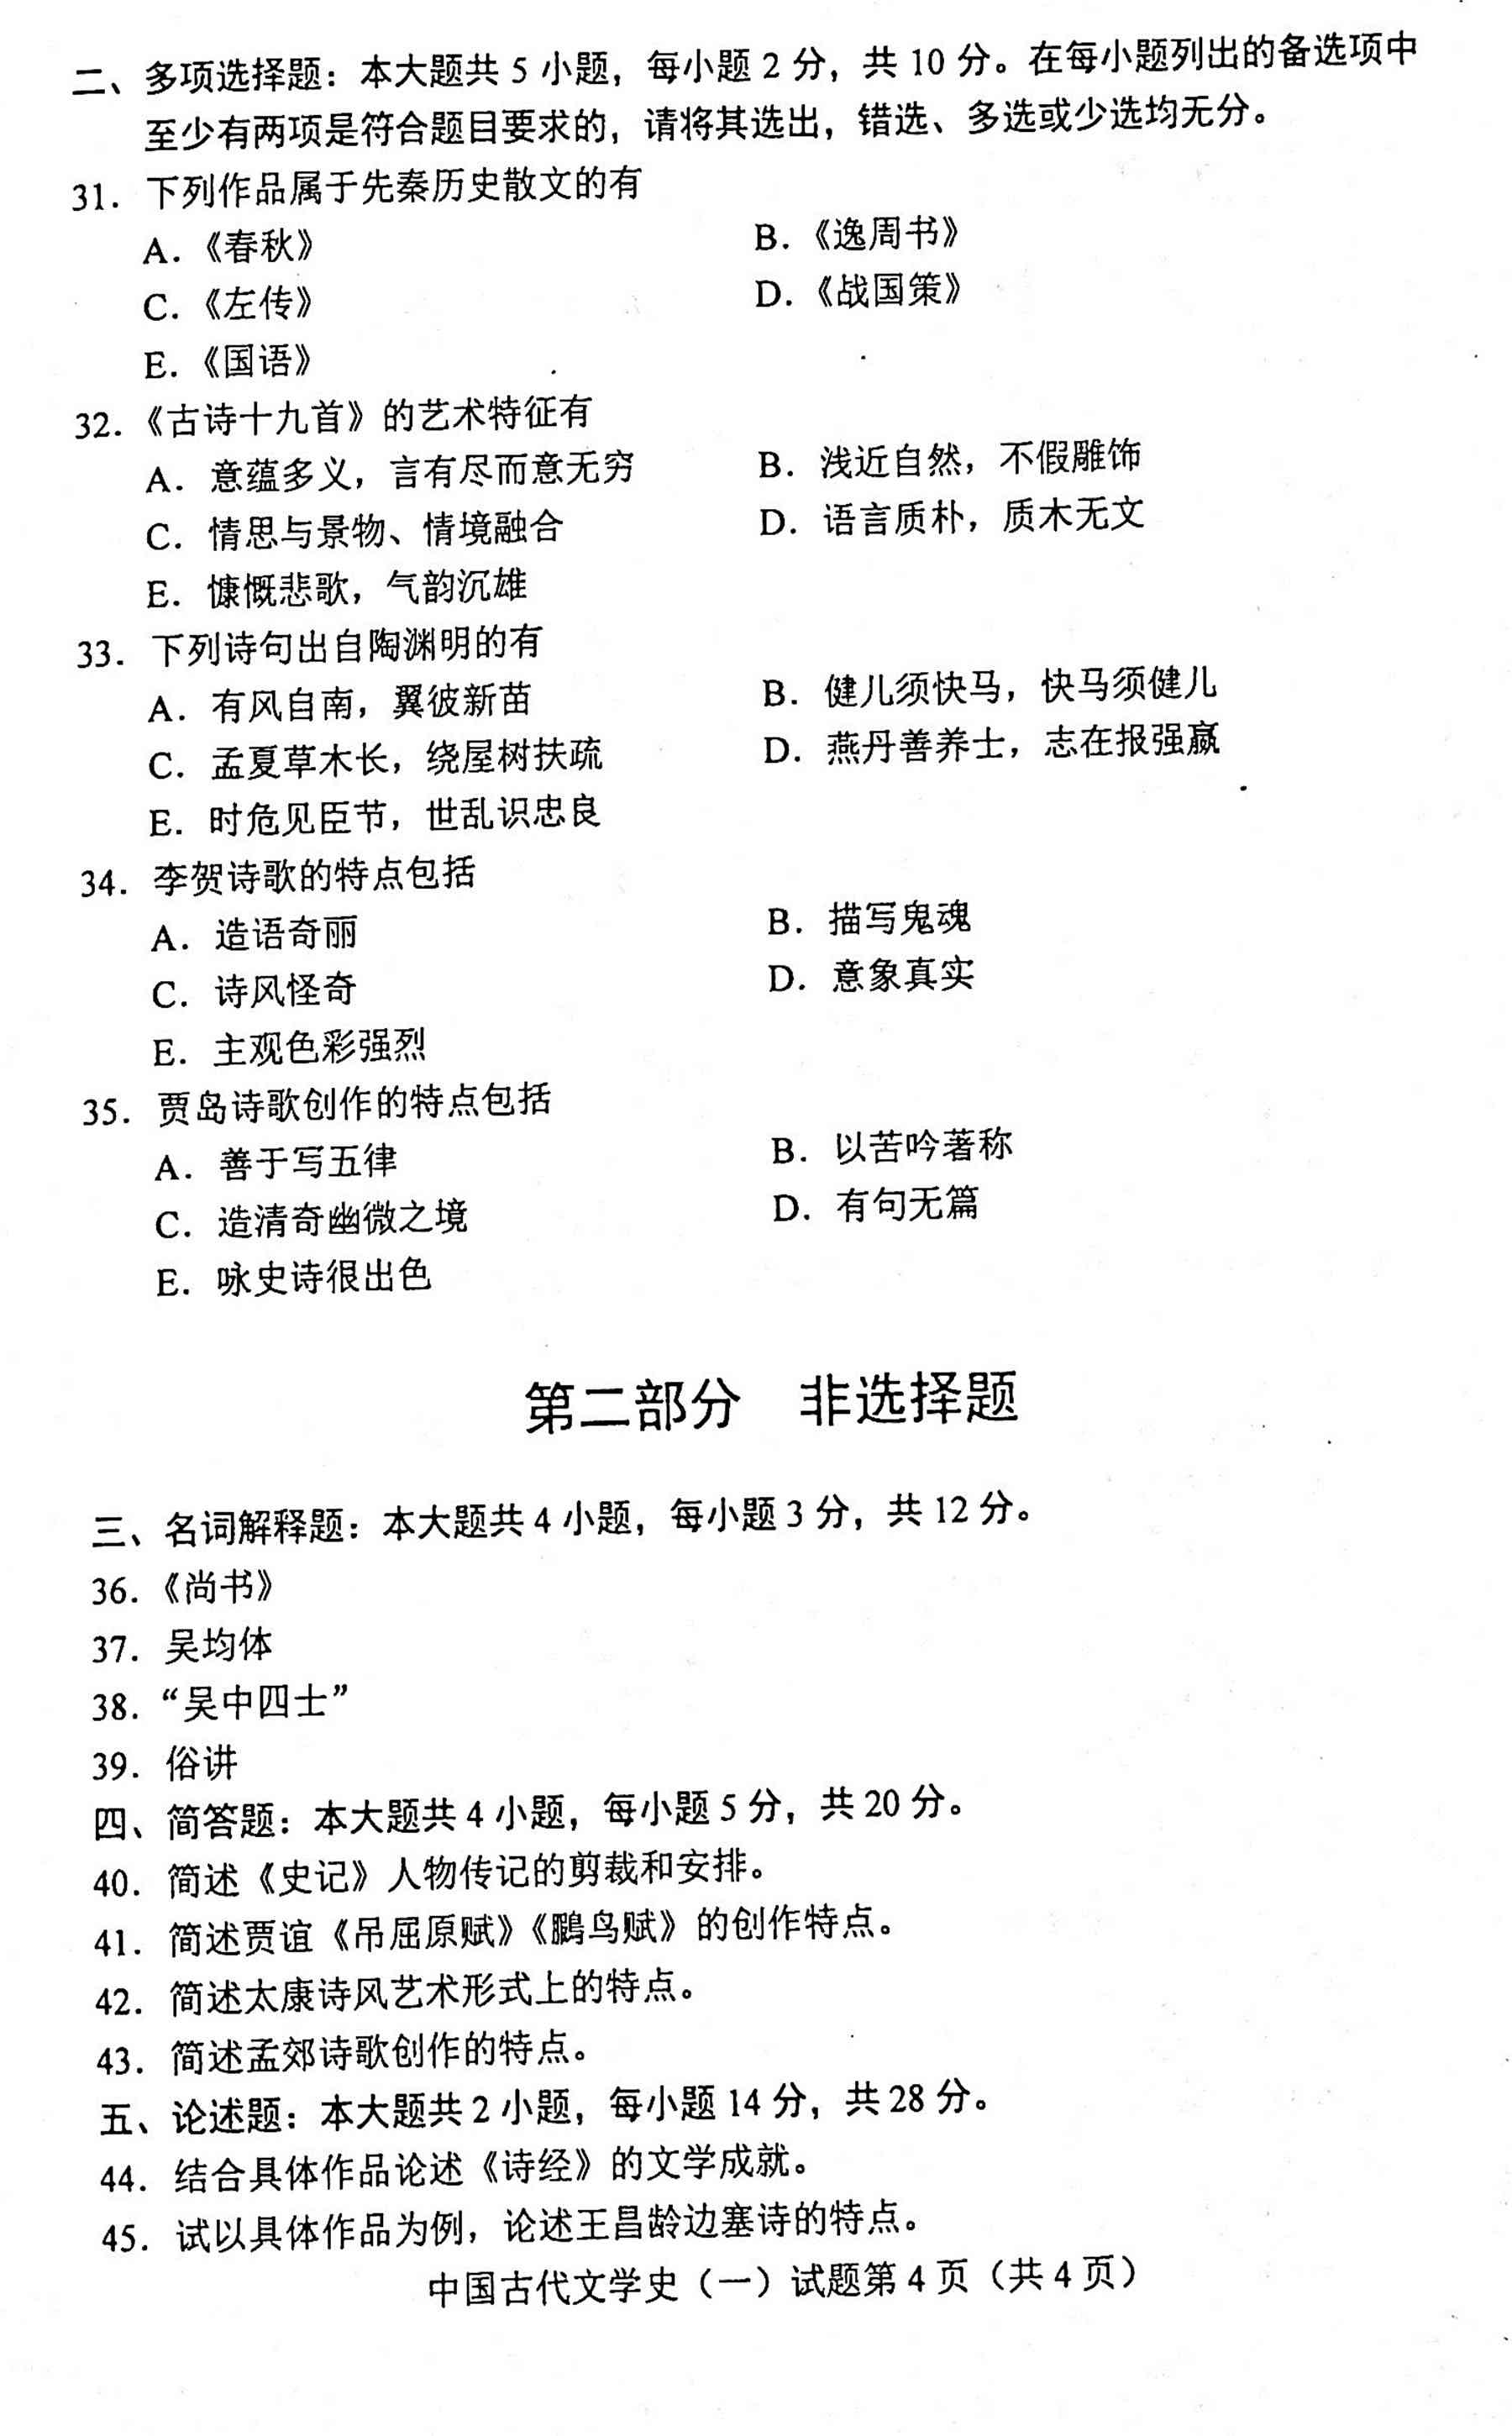 贵州自考2020年10月份00538中国古代文学史(一)试题及答案